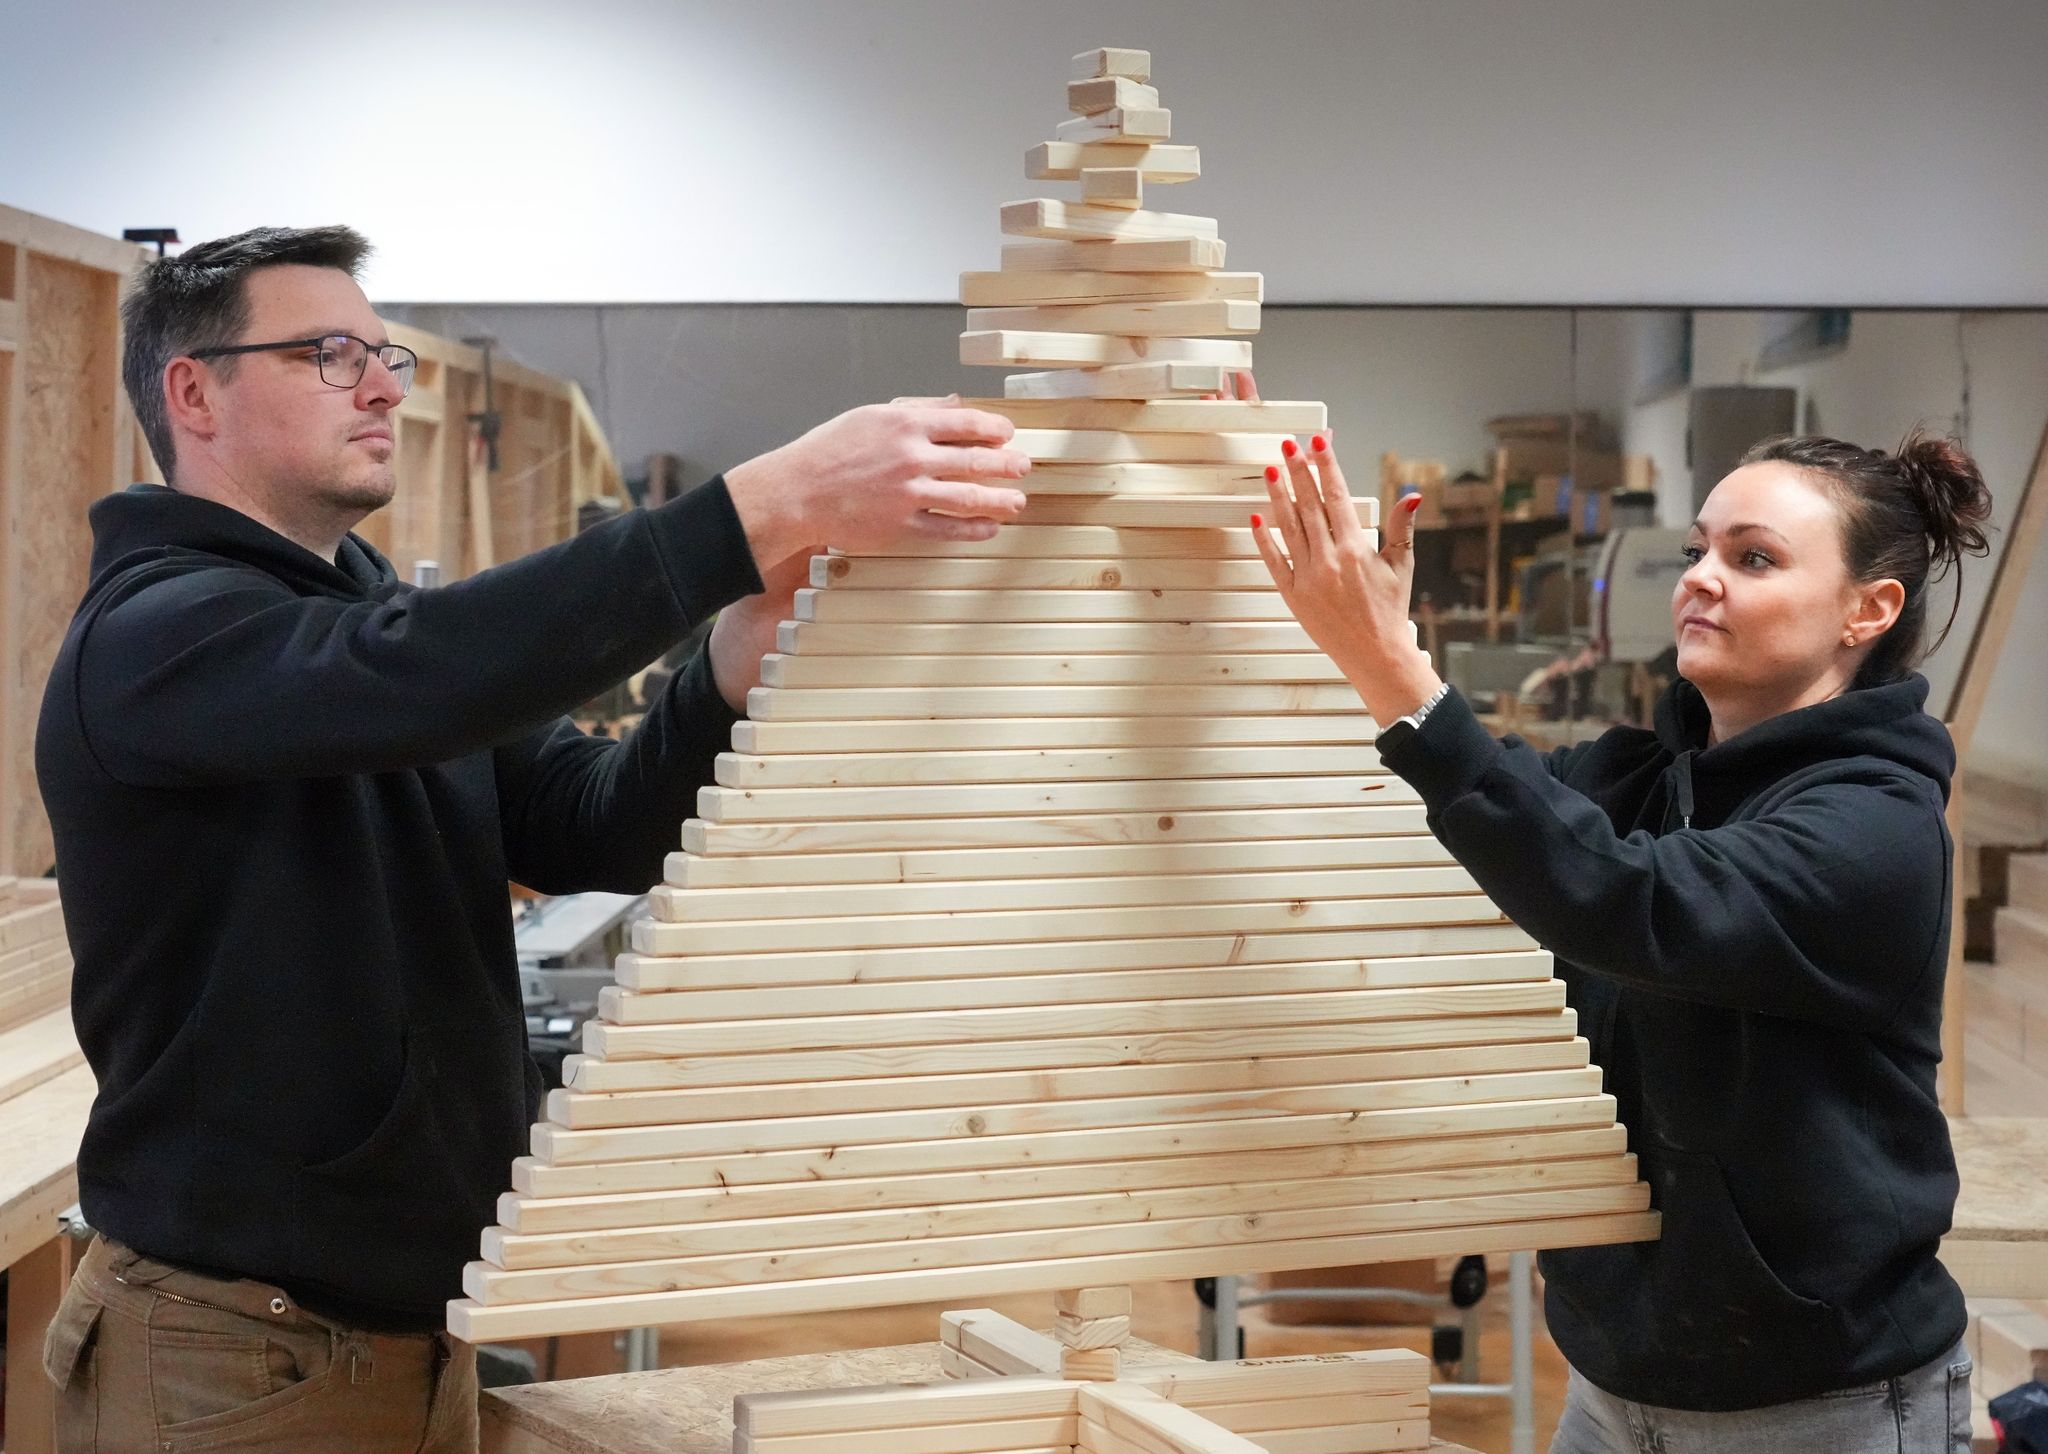 Der Bautechniker Thilo Tolkmitt und Betriebswirtin Ulrike Thunack setzen einen Baum aus Holzlatten zusammen.